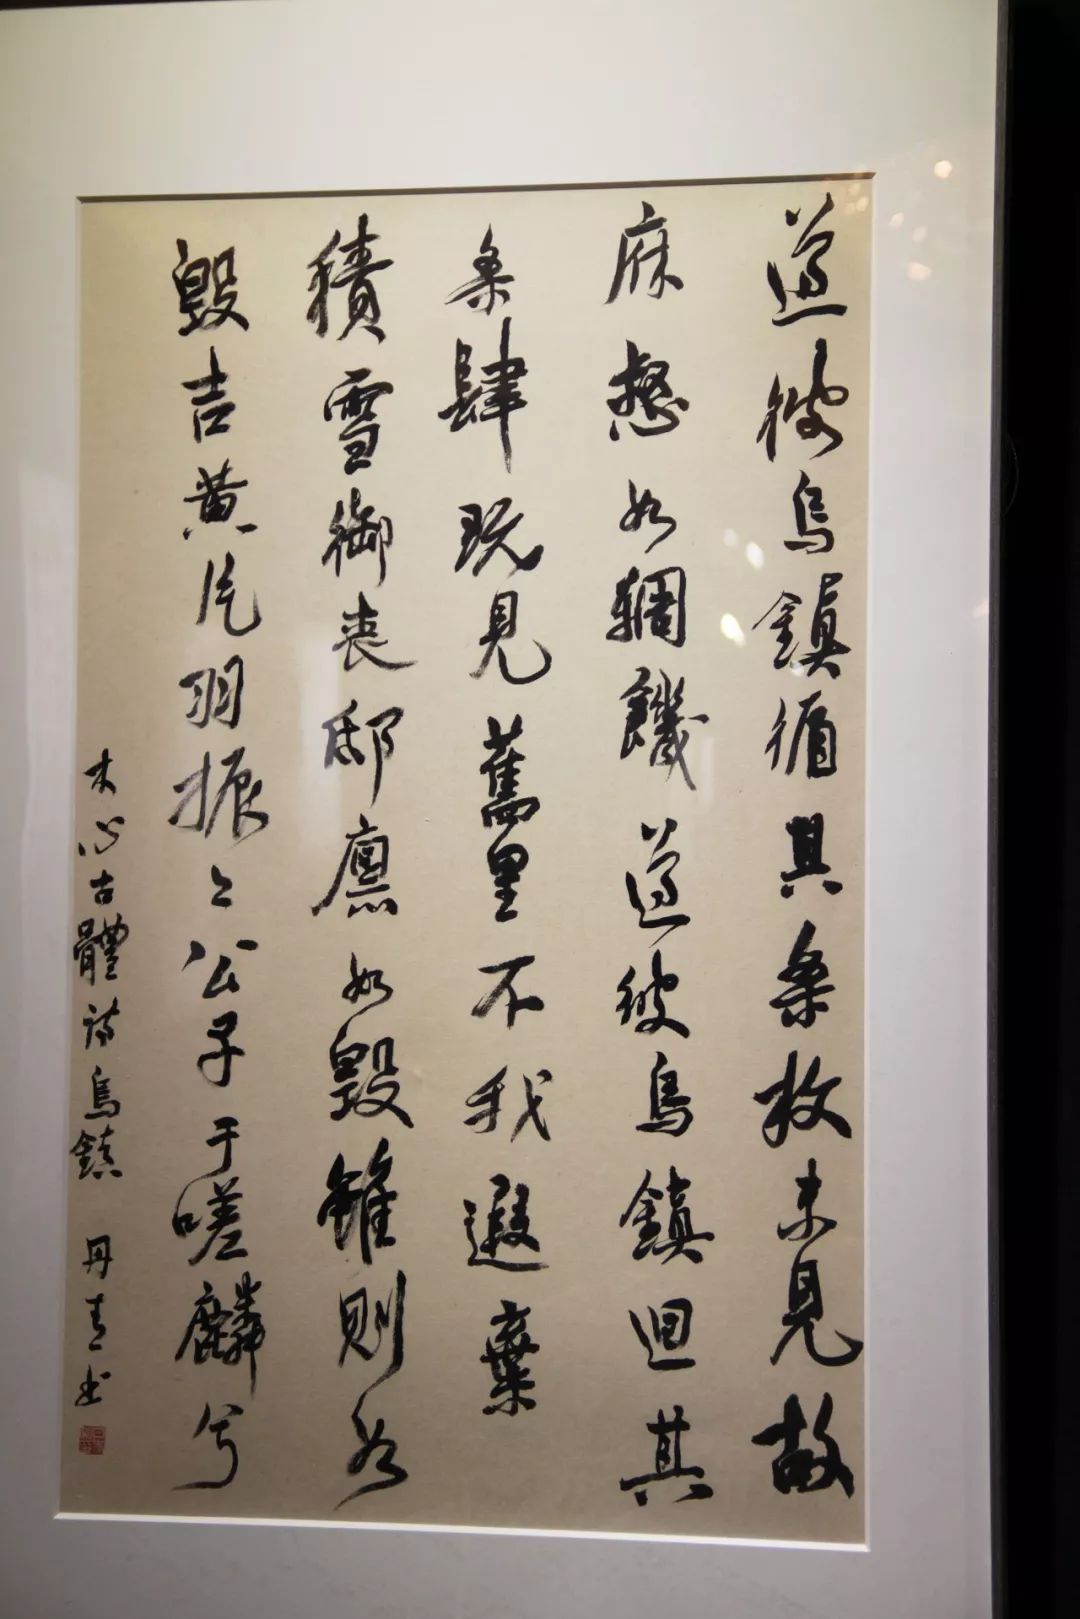 陈丹青书法作品首展于6月13日在北京开展